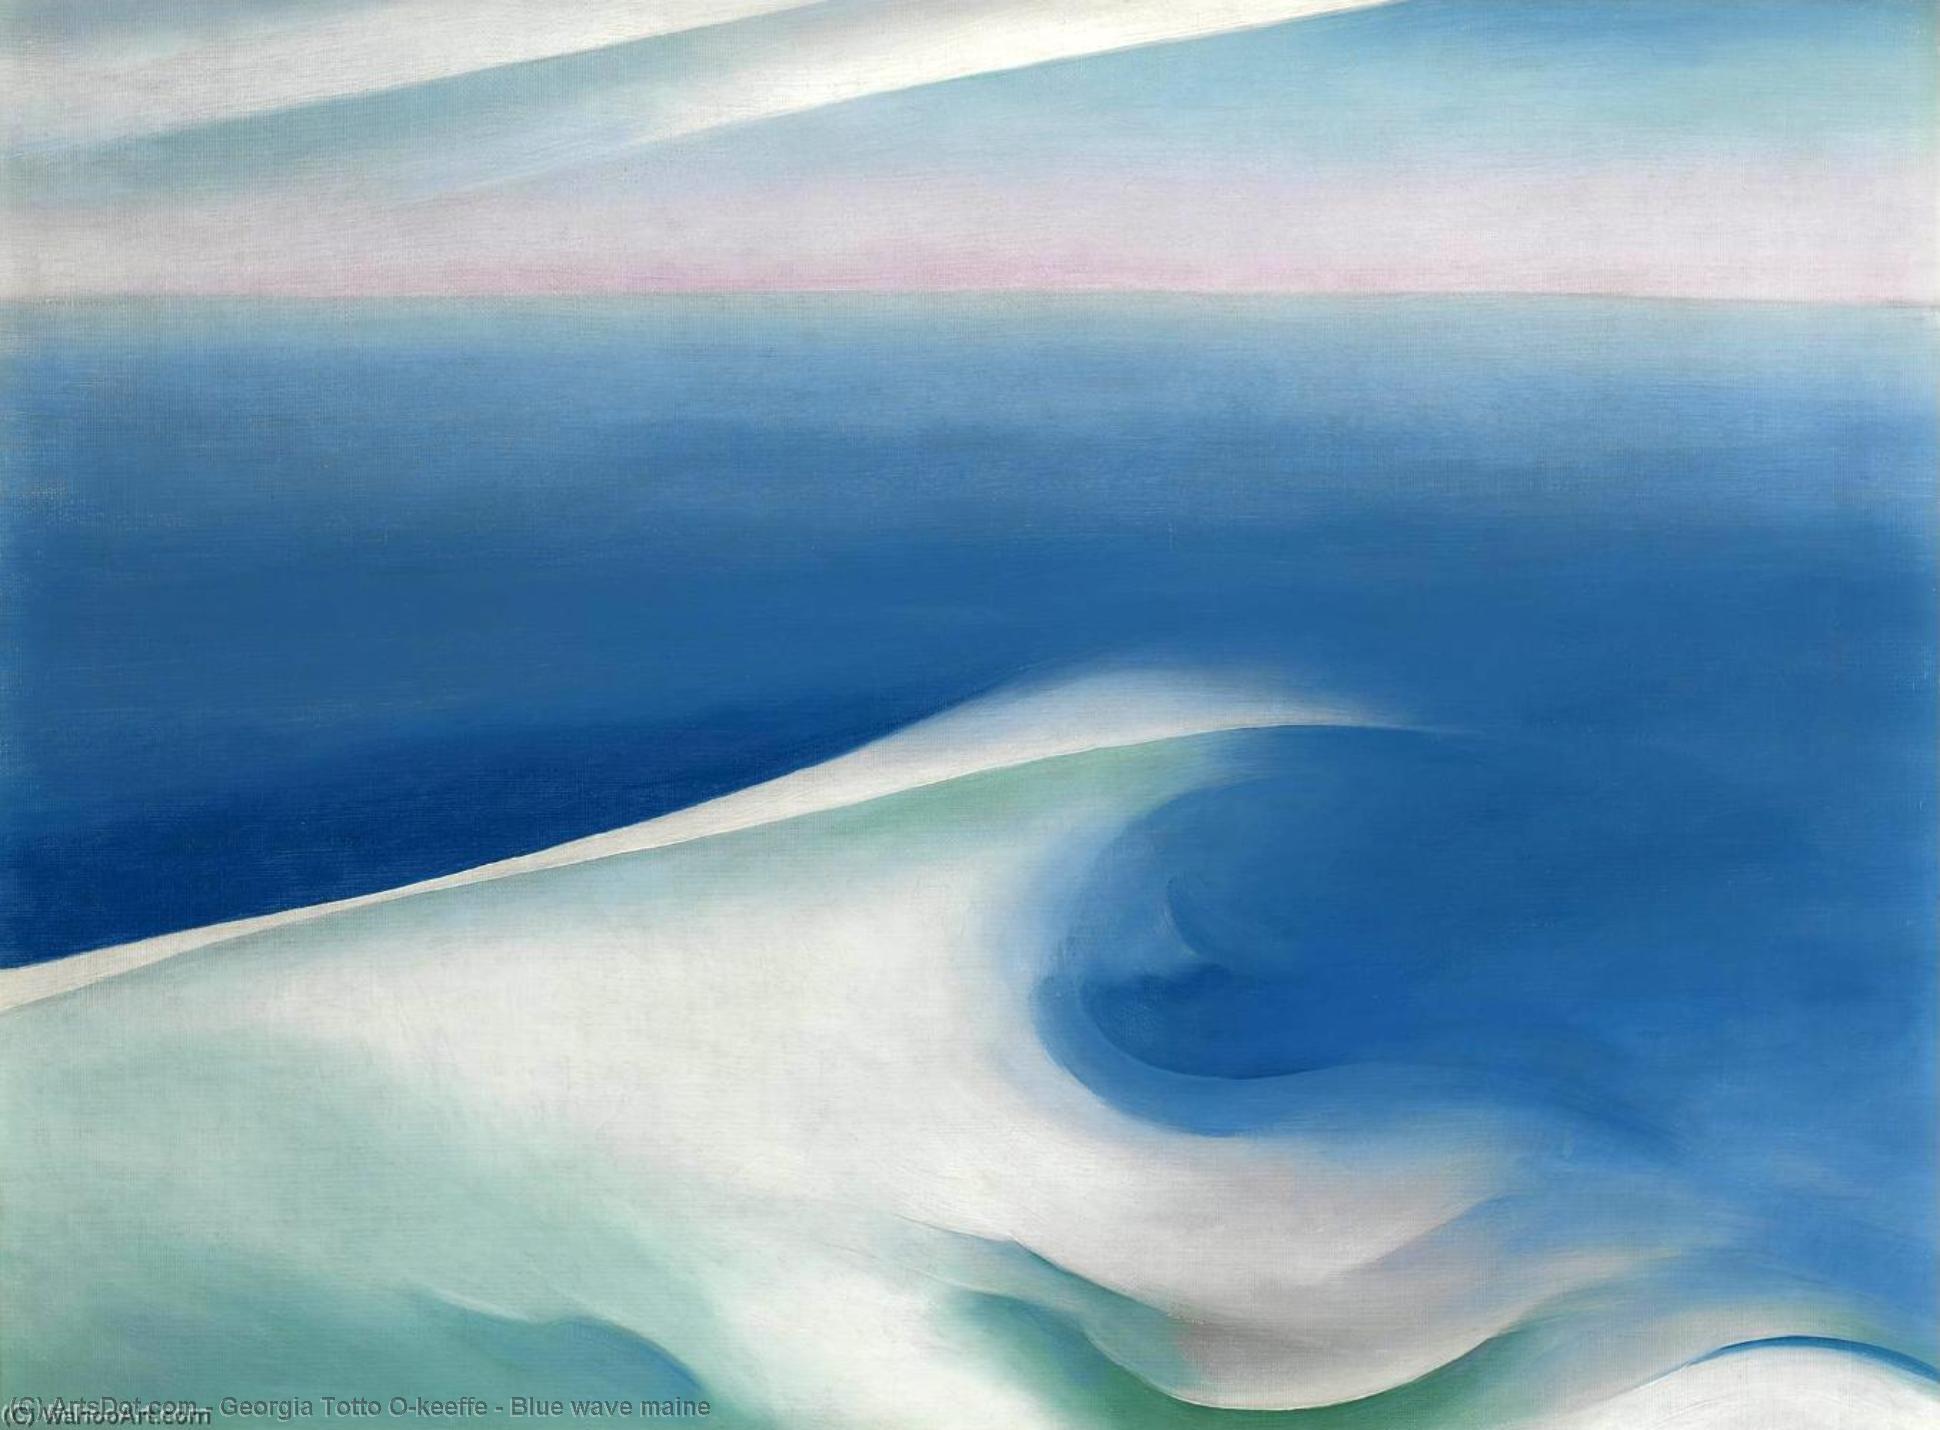 WikiOO.org - Encyclopedia of Fine Arts - Lukisan, Artwork Georgia Totto O'keeffe - Blue wave maine